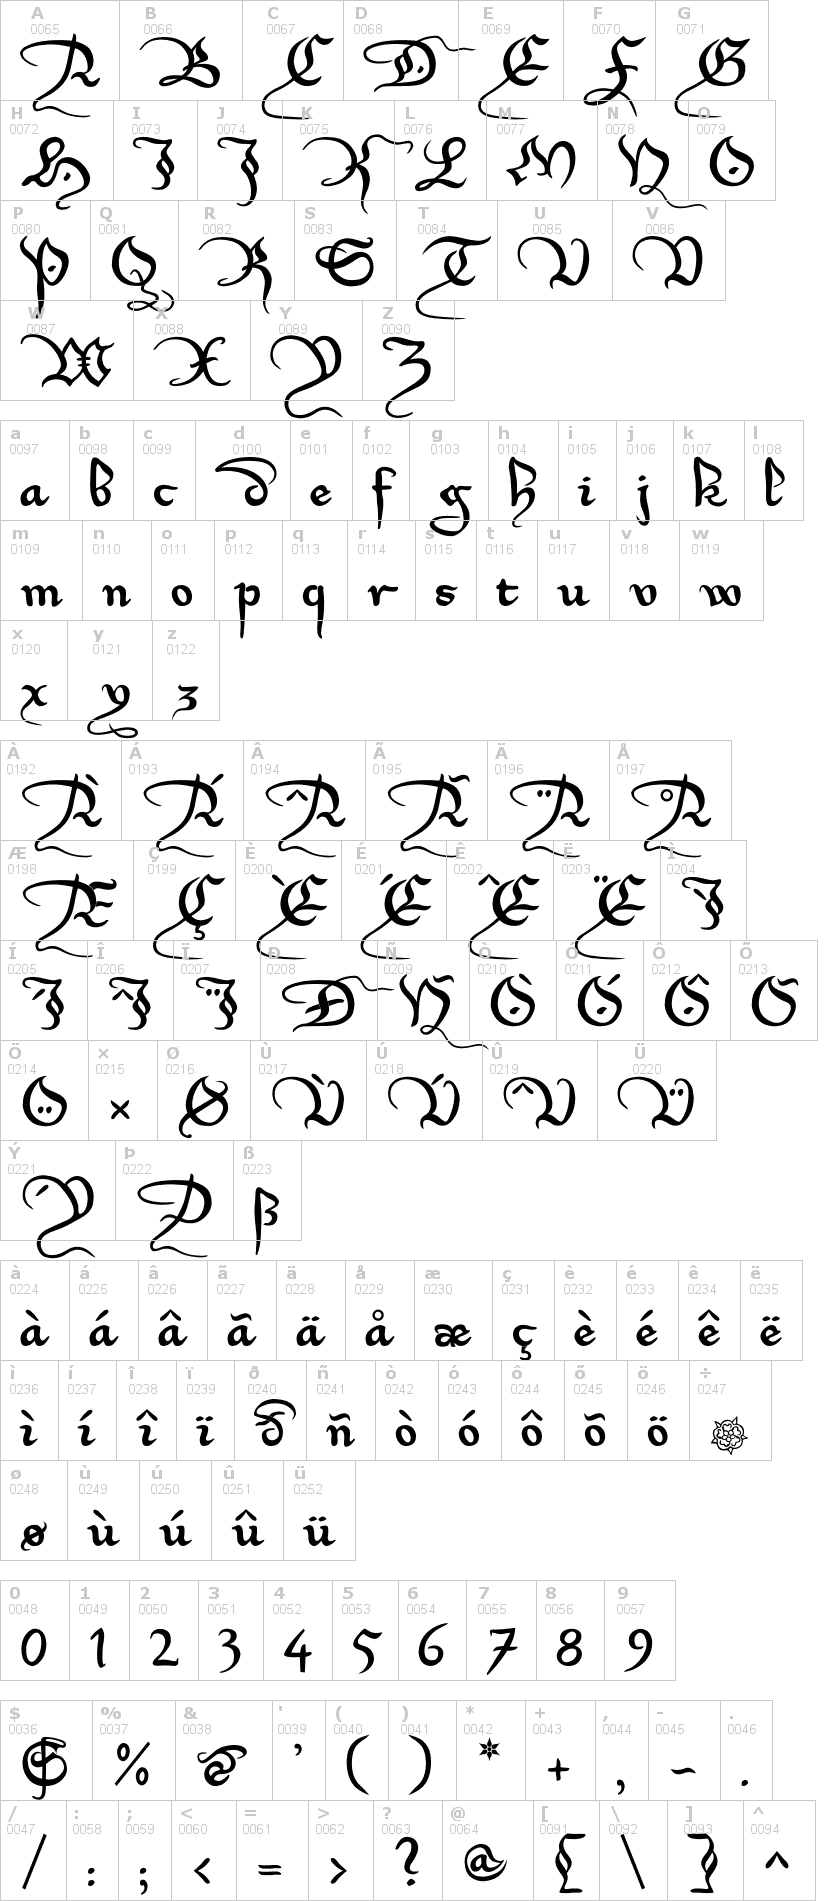 Lettere dell'alfabeto del font xirwena con le quali è possibile realizzare adesivi prespaziati